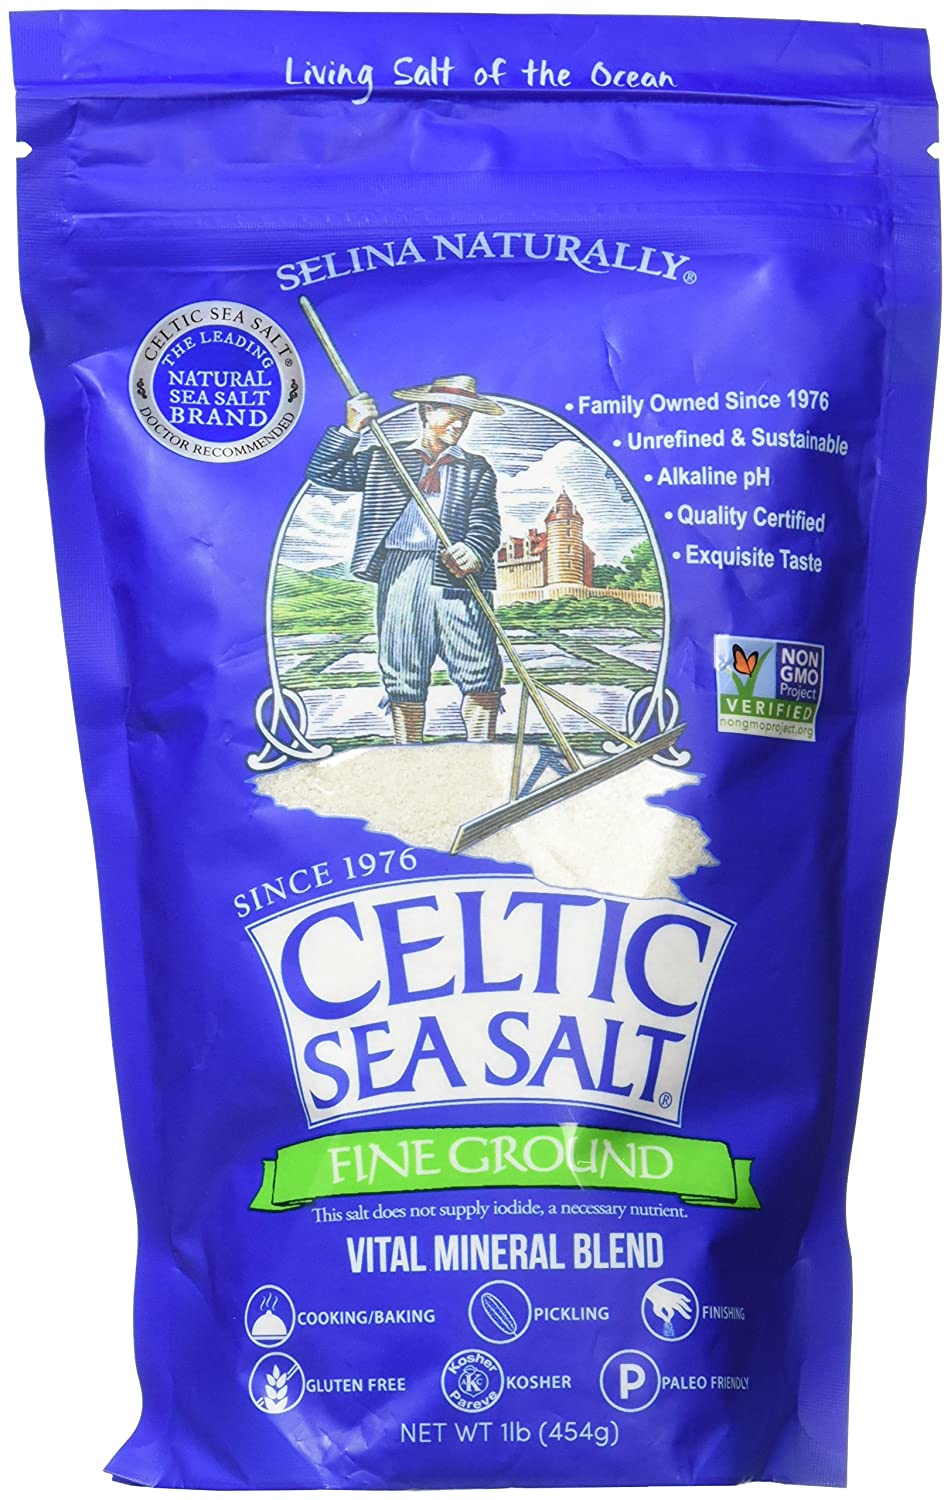 Celtic Sea Salt Unrefined Certified Salt For Cooking